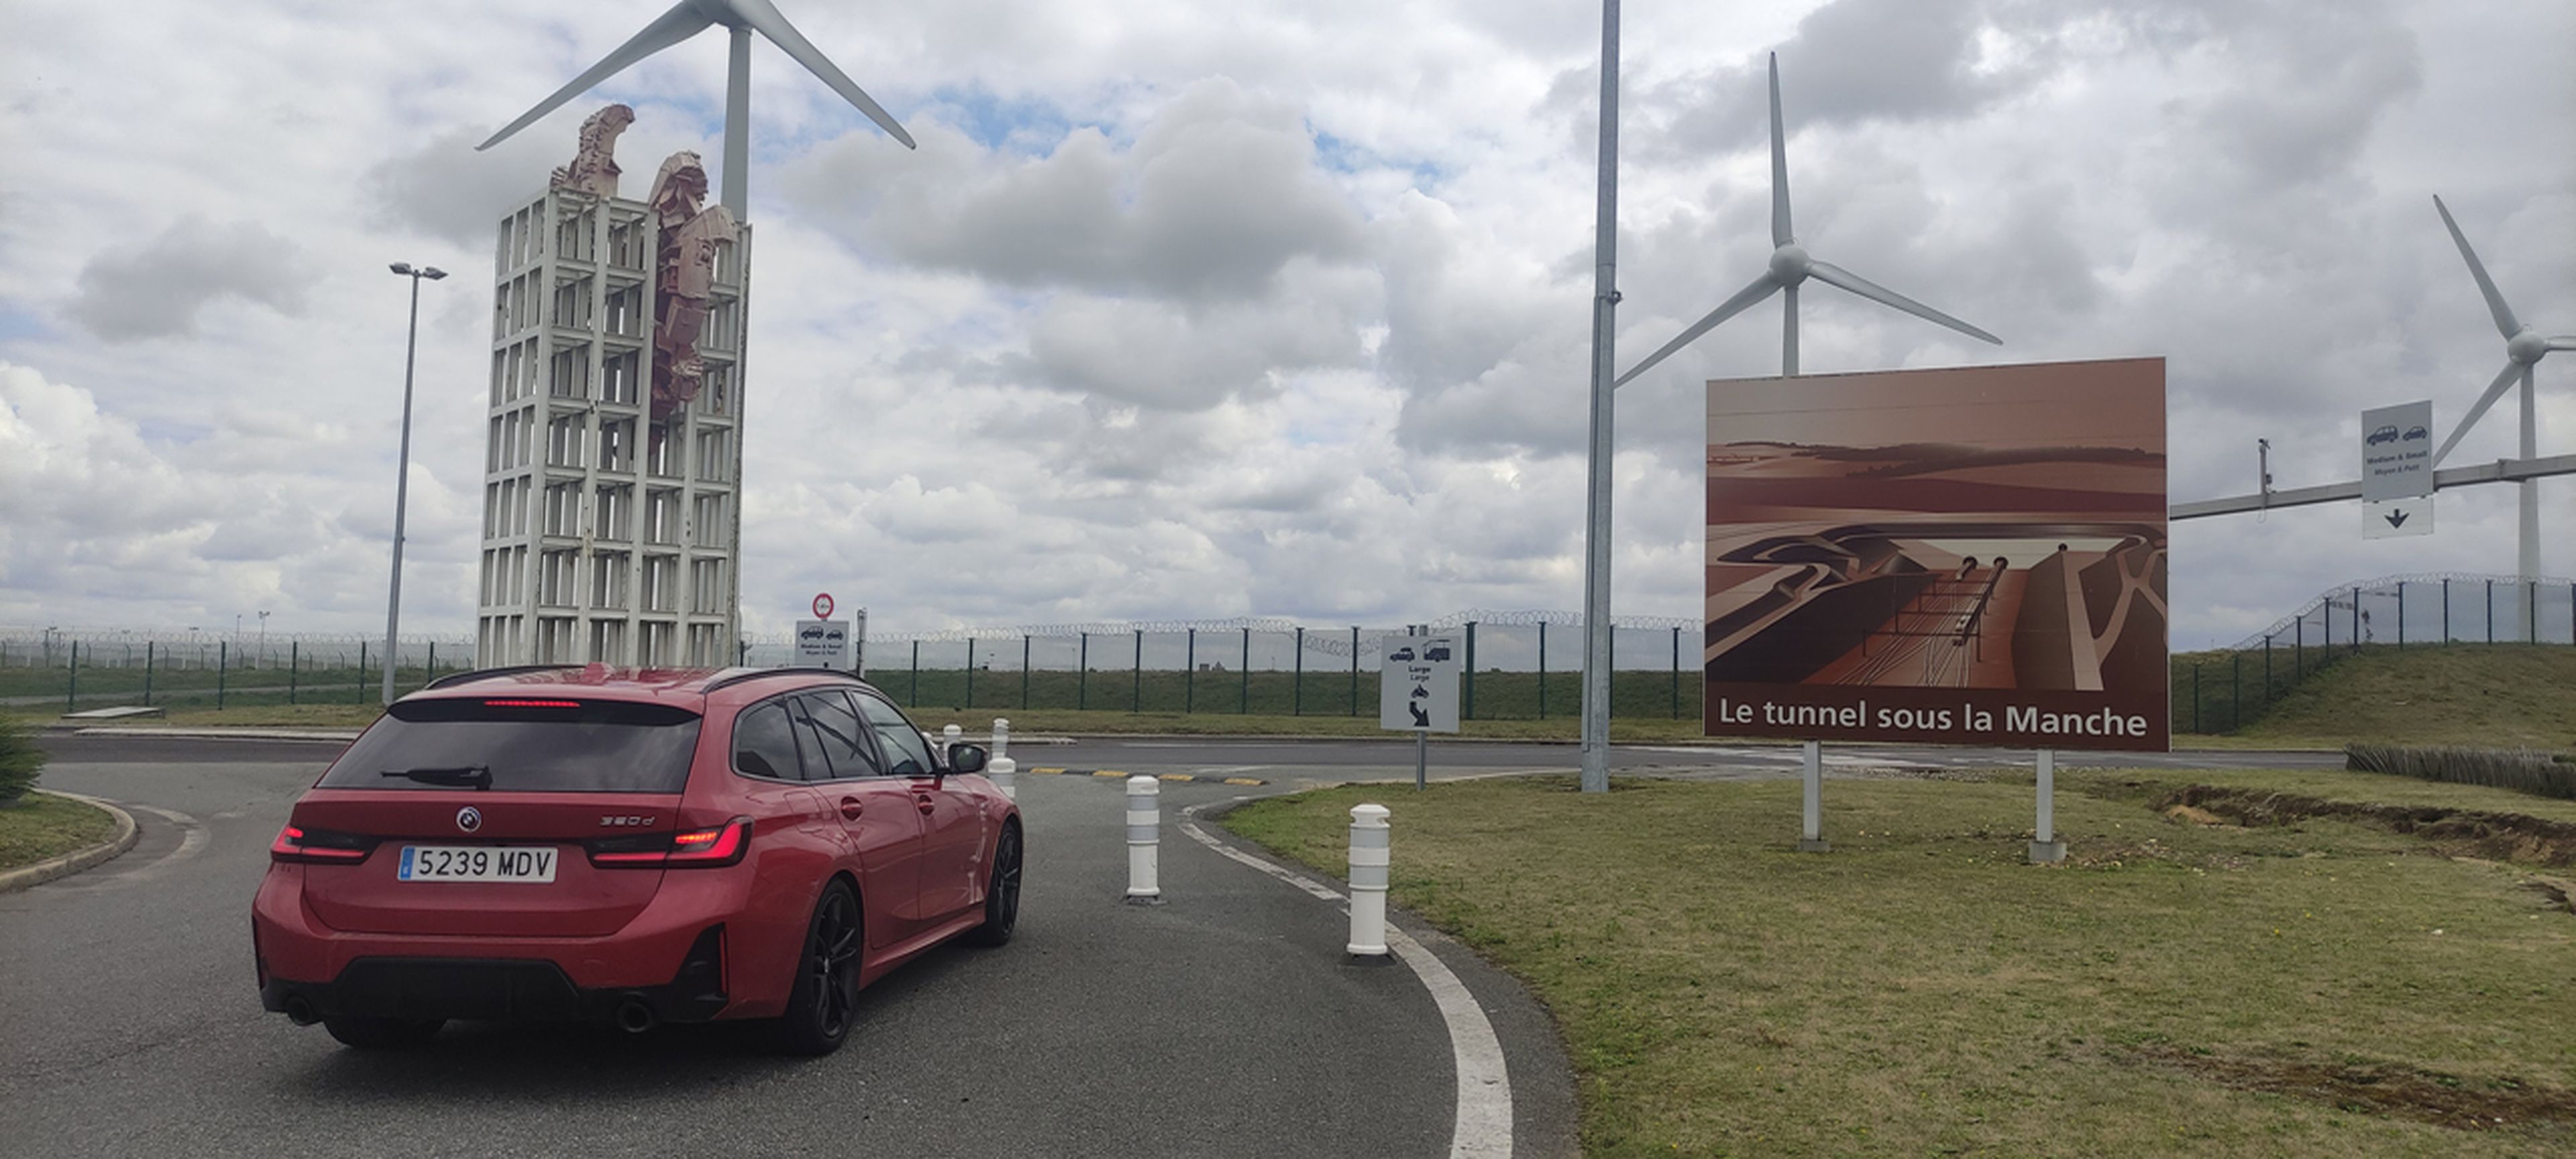 Eurotúnel: todo lo que necesitas saber para atravesar el Canal de La Mancha en coche